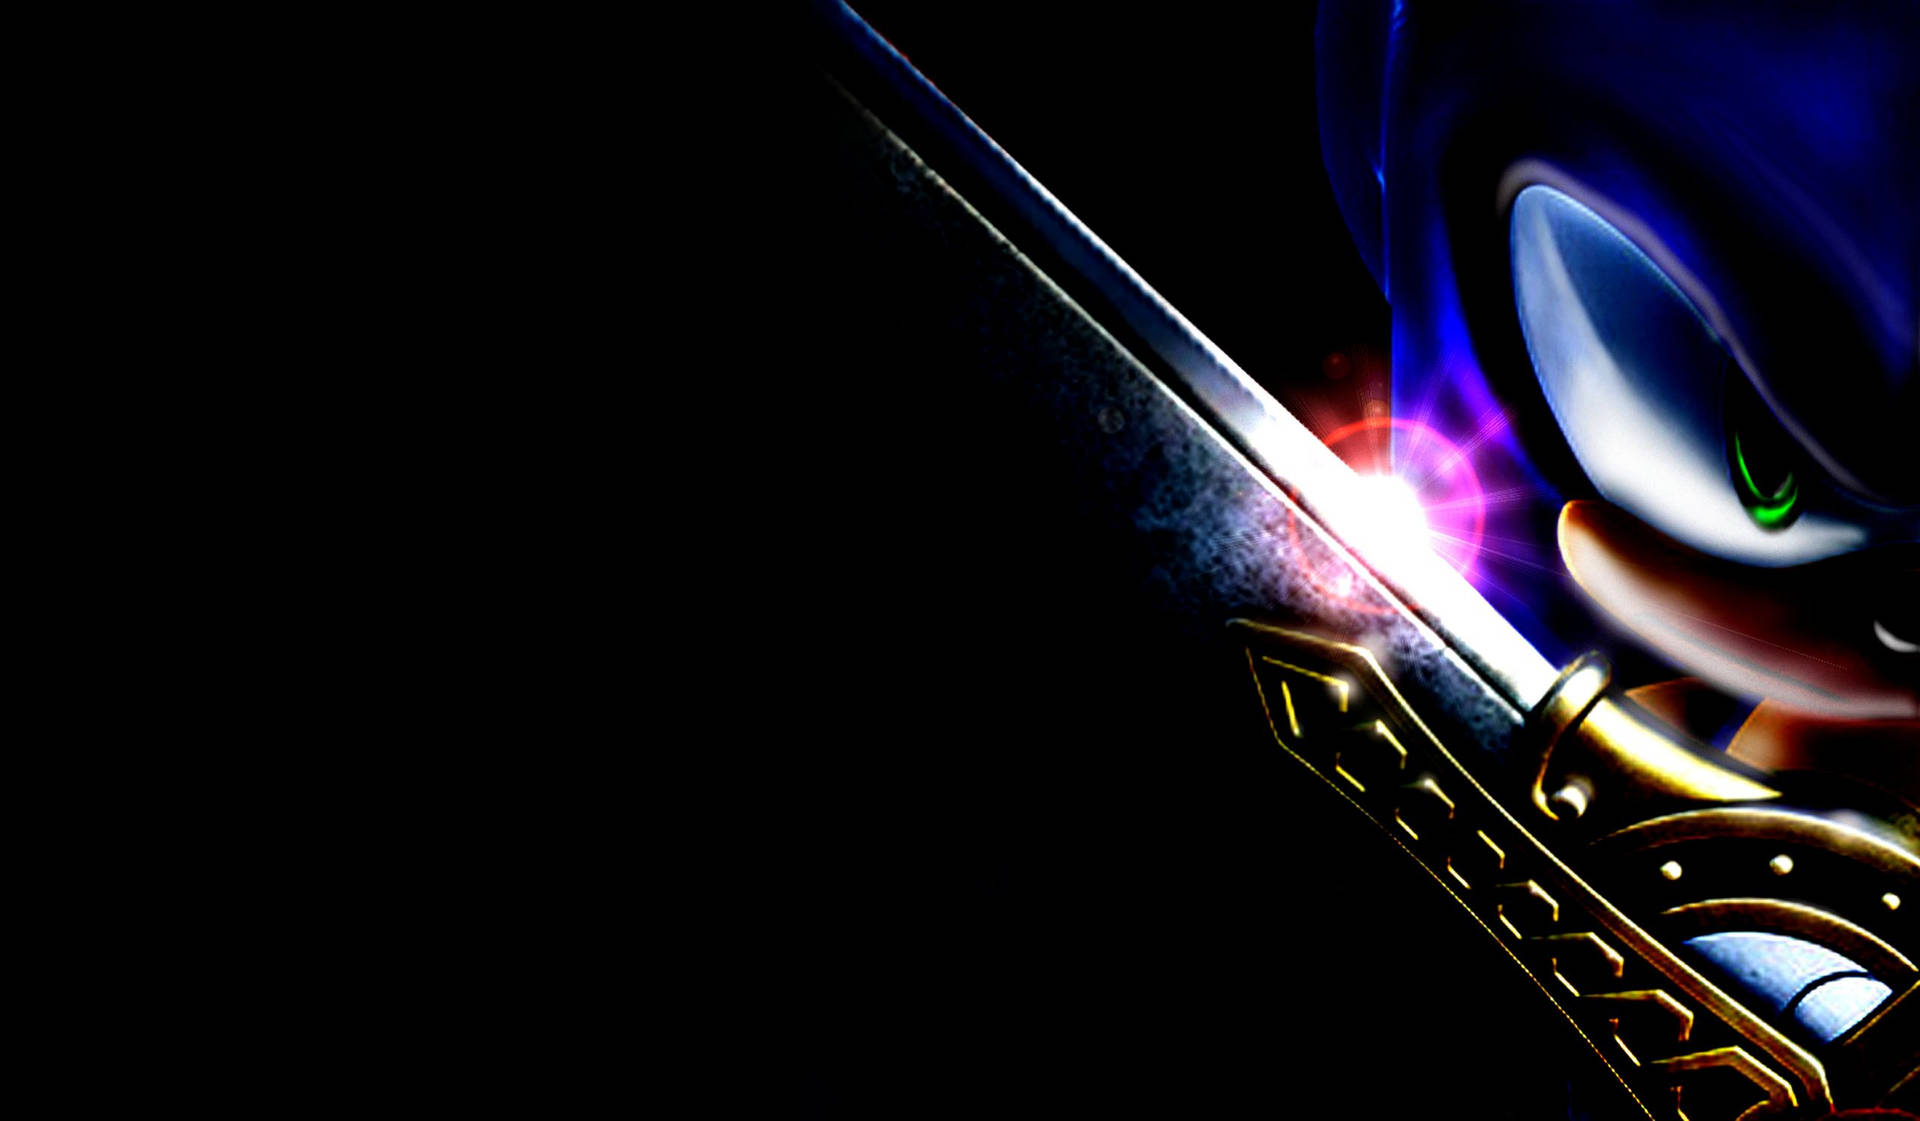 Mørk Sonic Excalibur Sword Wallpaper